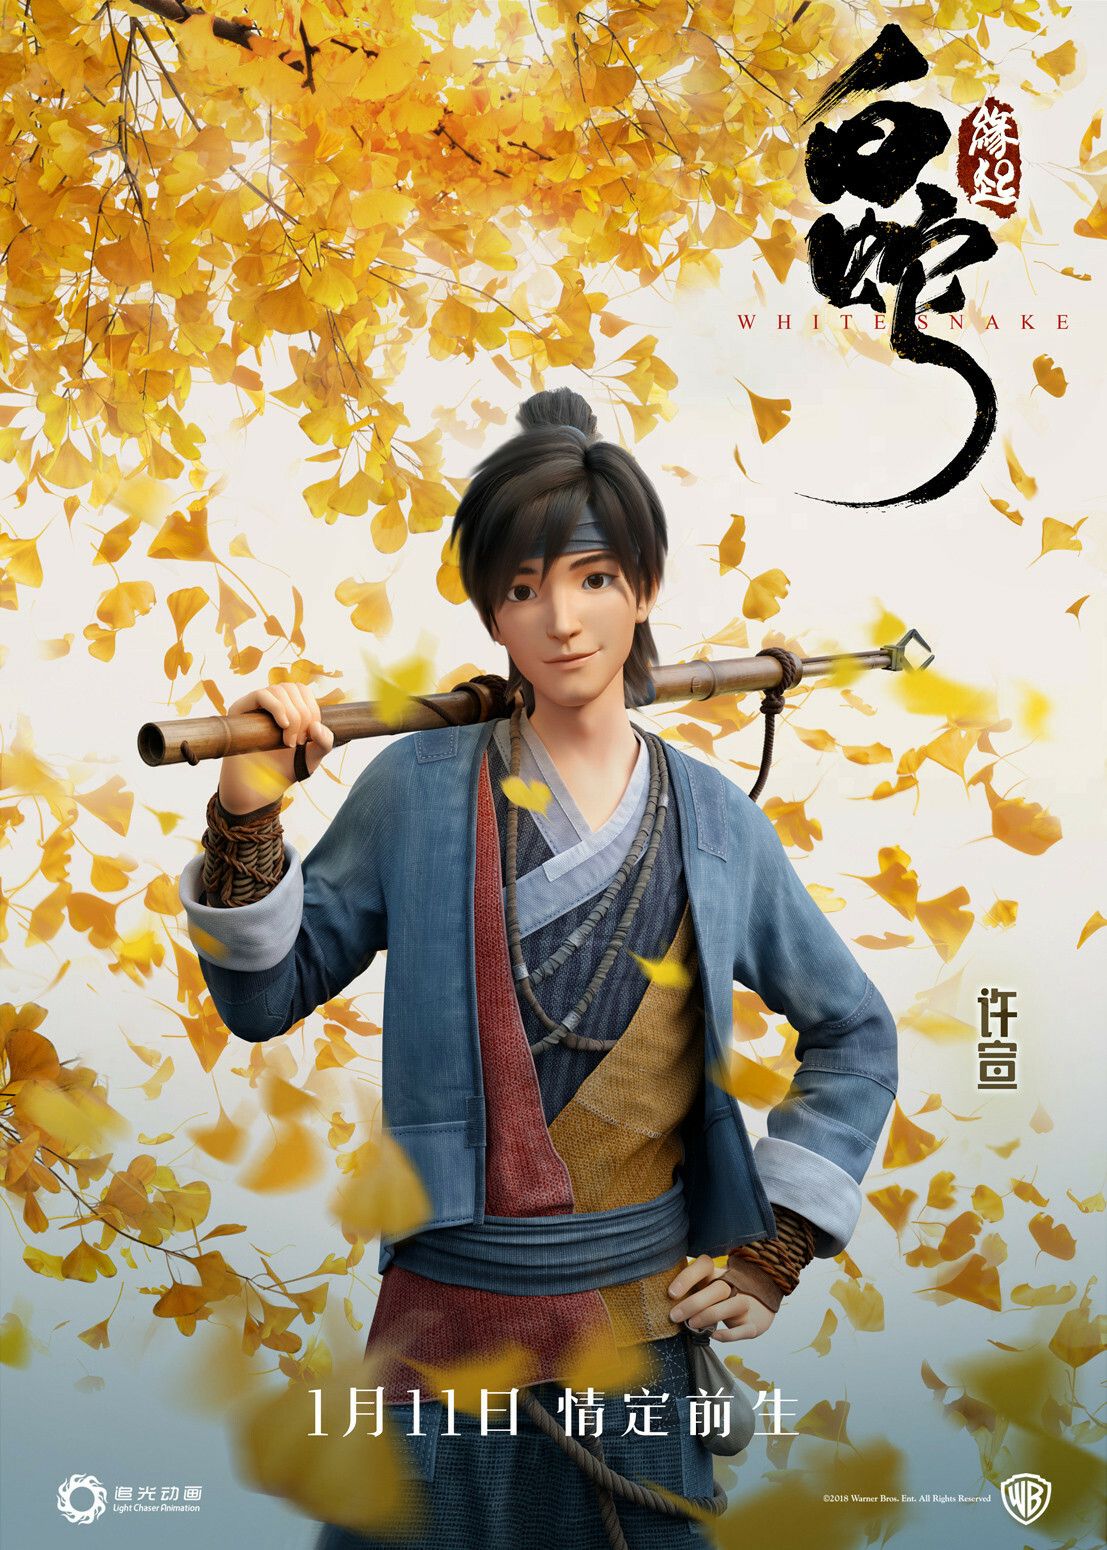 WHITE SNAKE Xuan poster, yw tang